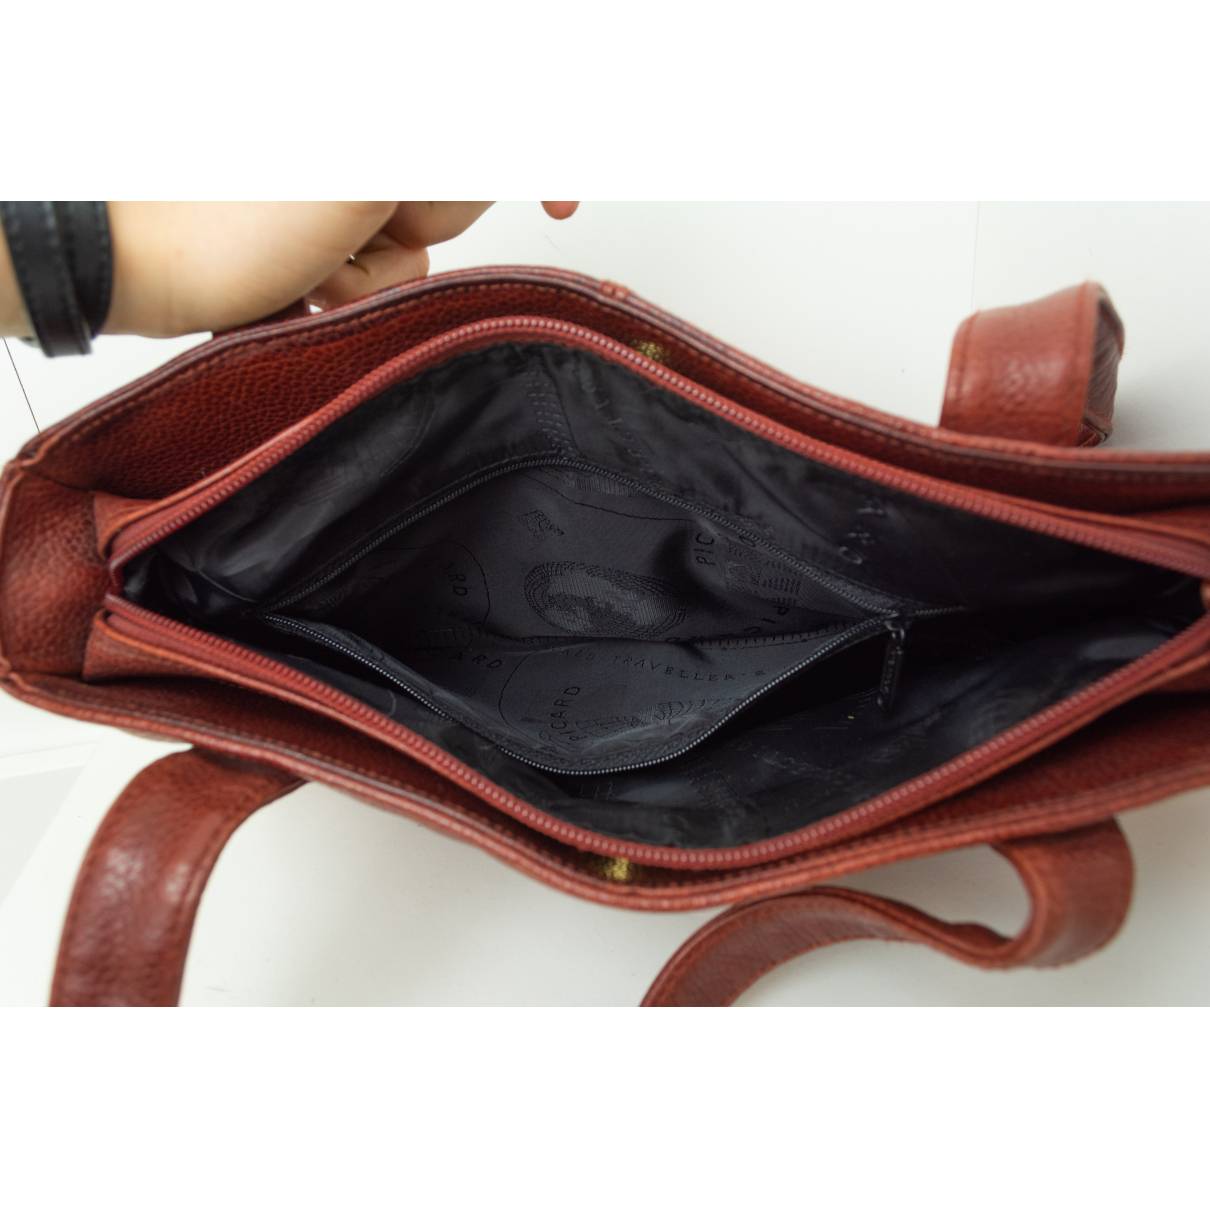 Picard Ladies Handbag Leather Shopper Bag Shoulder Bag Lady Bag Promo Five